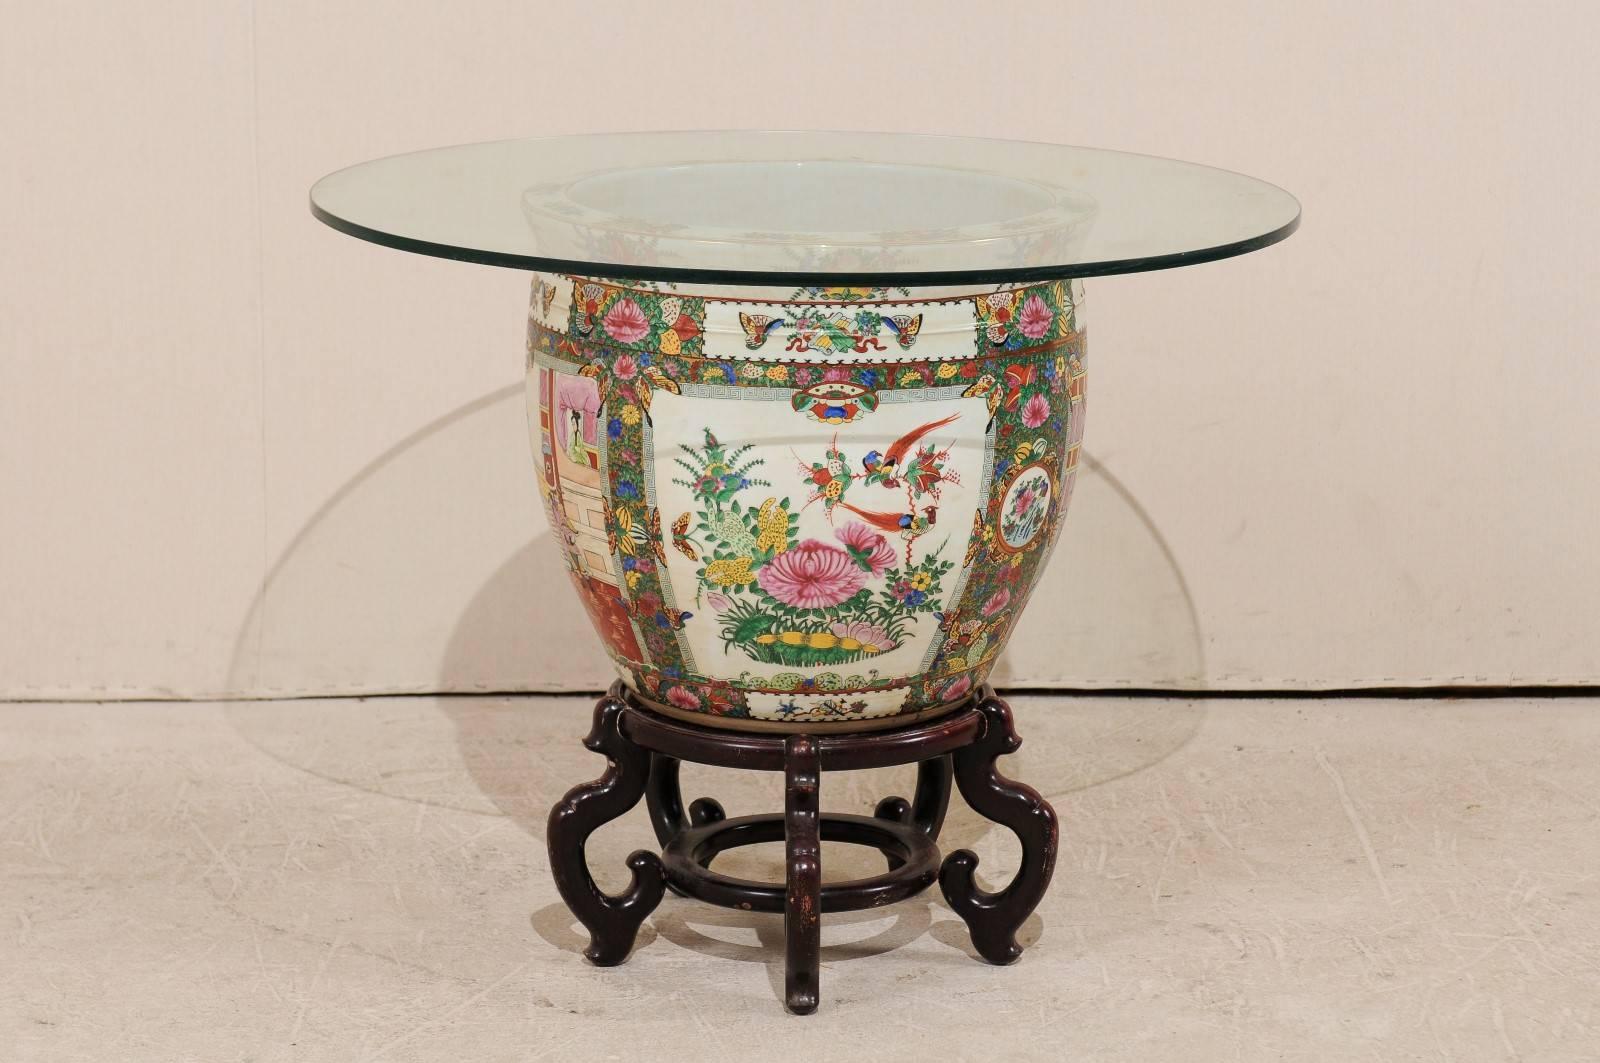 Ein chinesischer Famille-Rose-Tisch mit Glasplatte. Dieser runde chinesische Tisch hat eine Glasplatte über einer großen Famille-Rose-Porzellanvase. Auf der Außenseite des Sockels sind schöne Vogel- und Blumendarstellungen zu sehen, während im